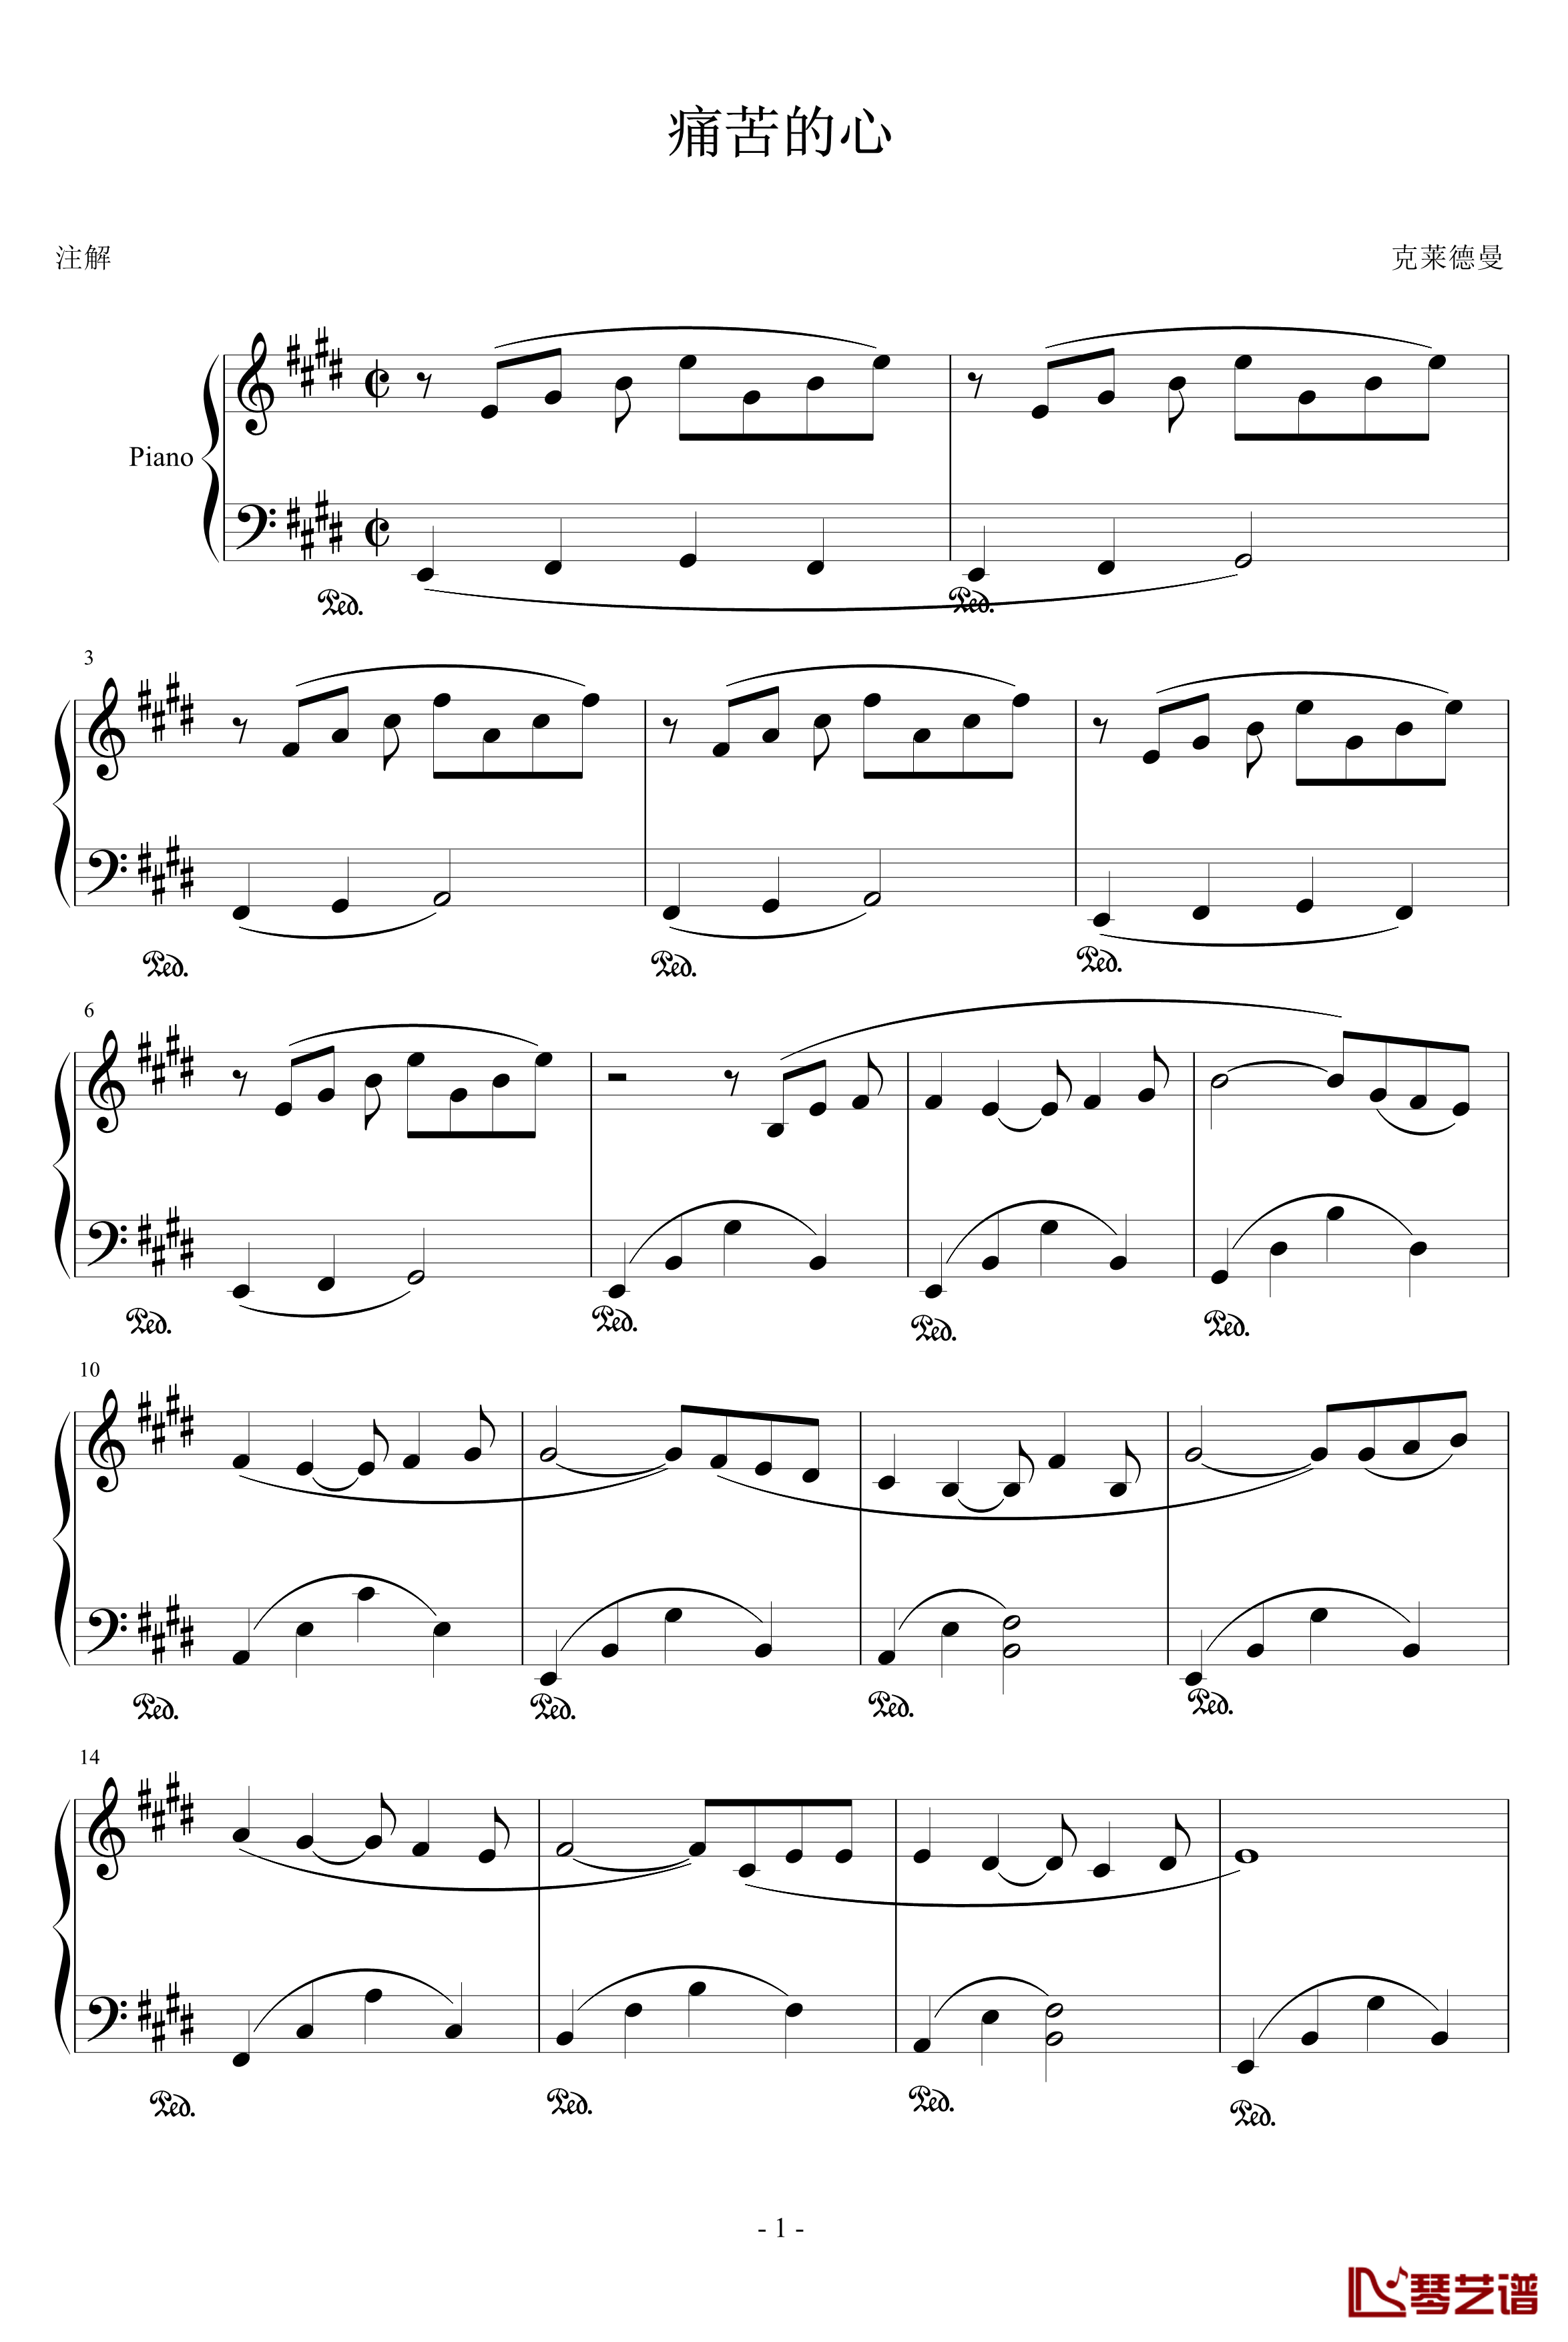 痛苦的心钢琴谱-zhoucong009上传版-克莱德曼1